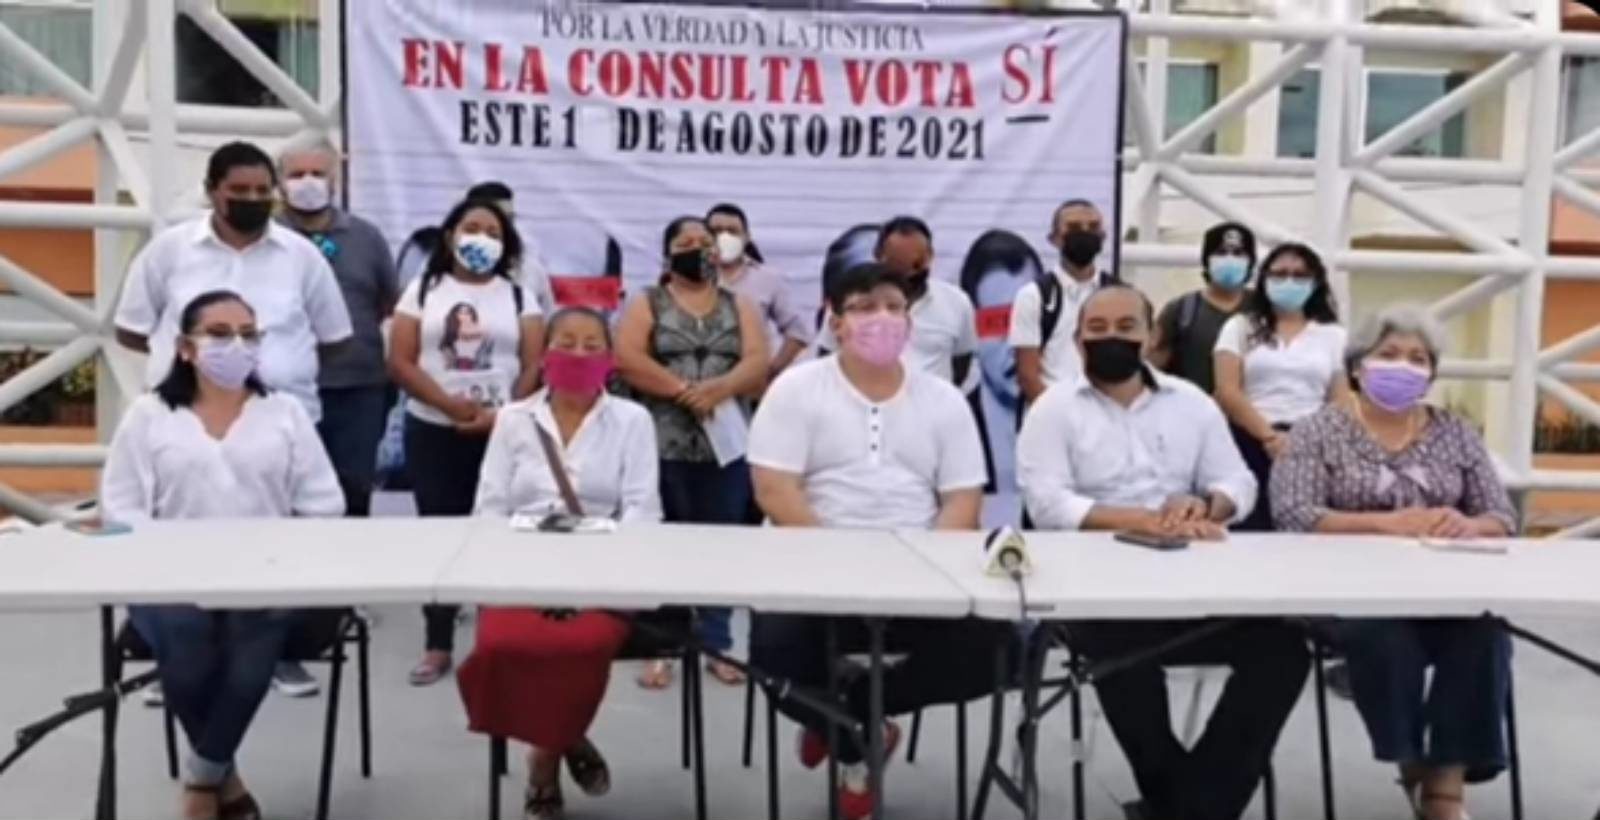 Ciudadanos de Campeche y Tijuana de unen en un solo grito: "sí a la consulta"